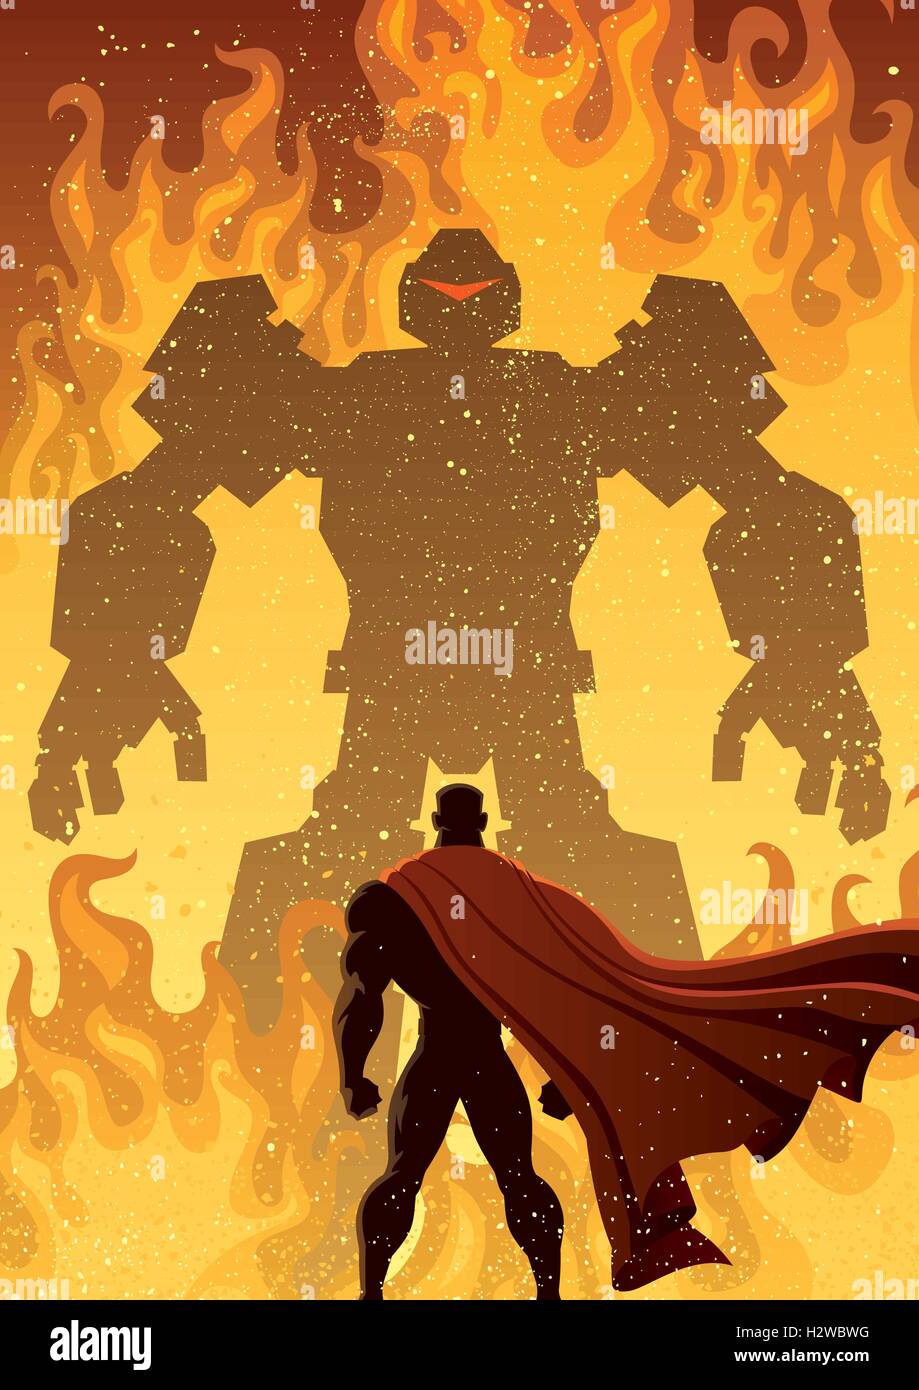 Superhero facing giant evil robot. Stock Vector